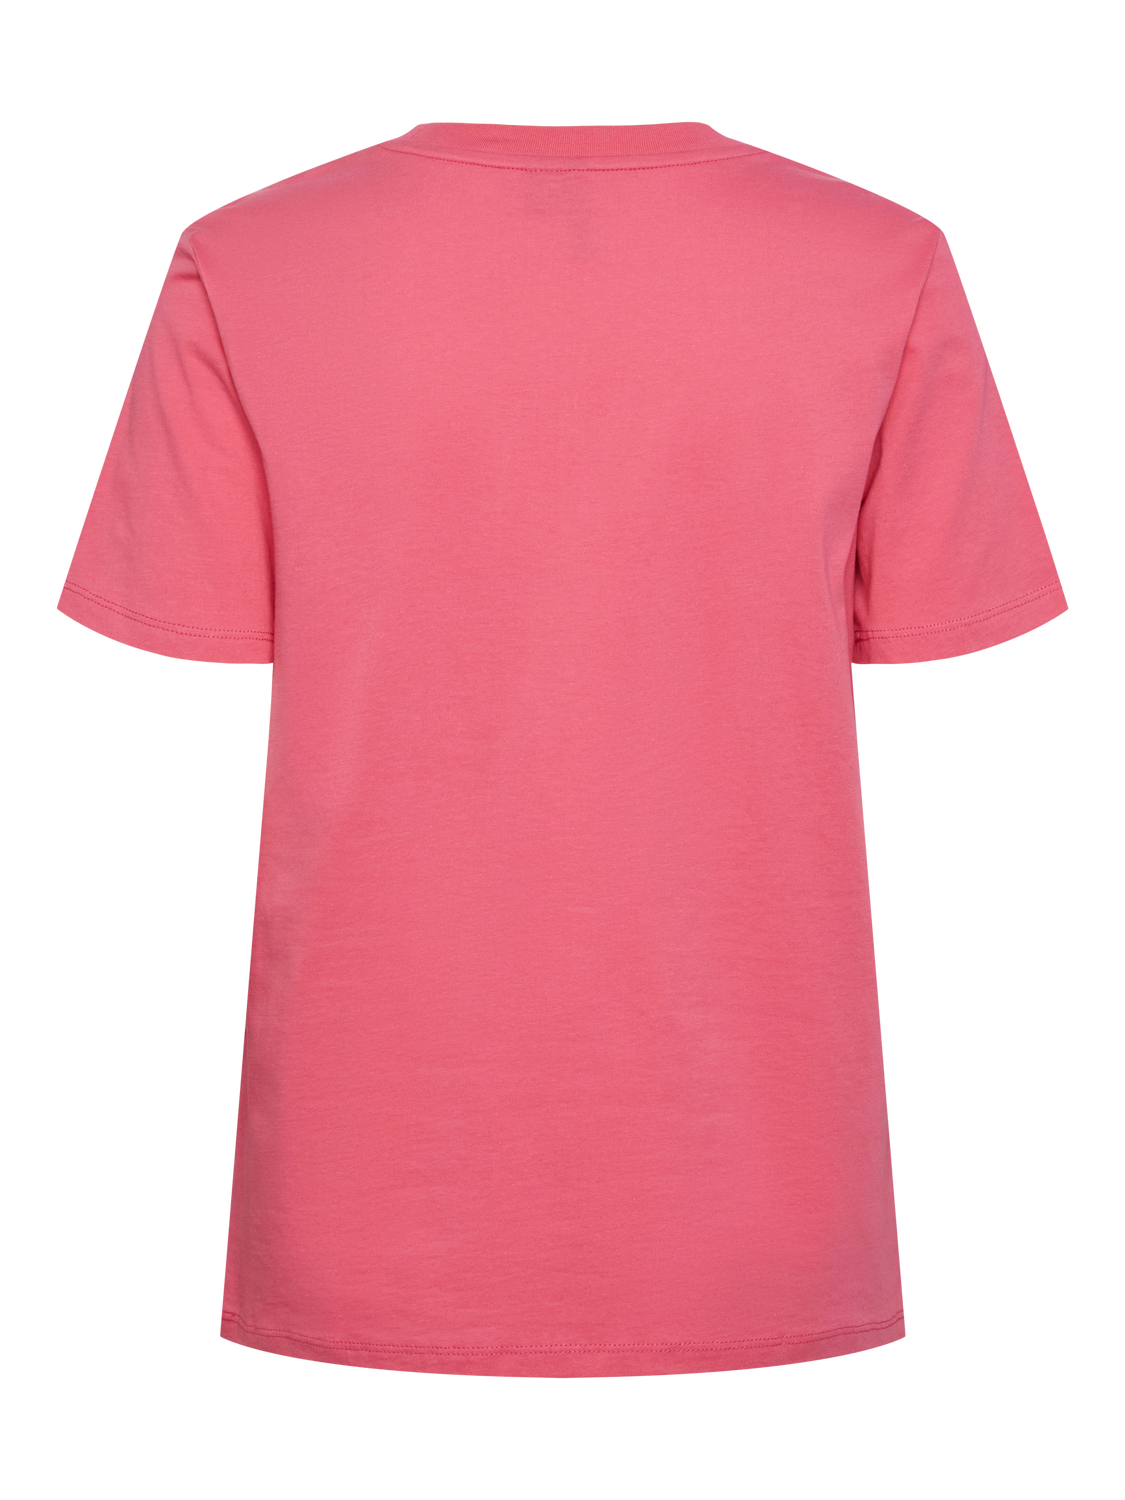 PCRIA T-Shirt - Hot Pink